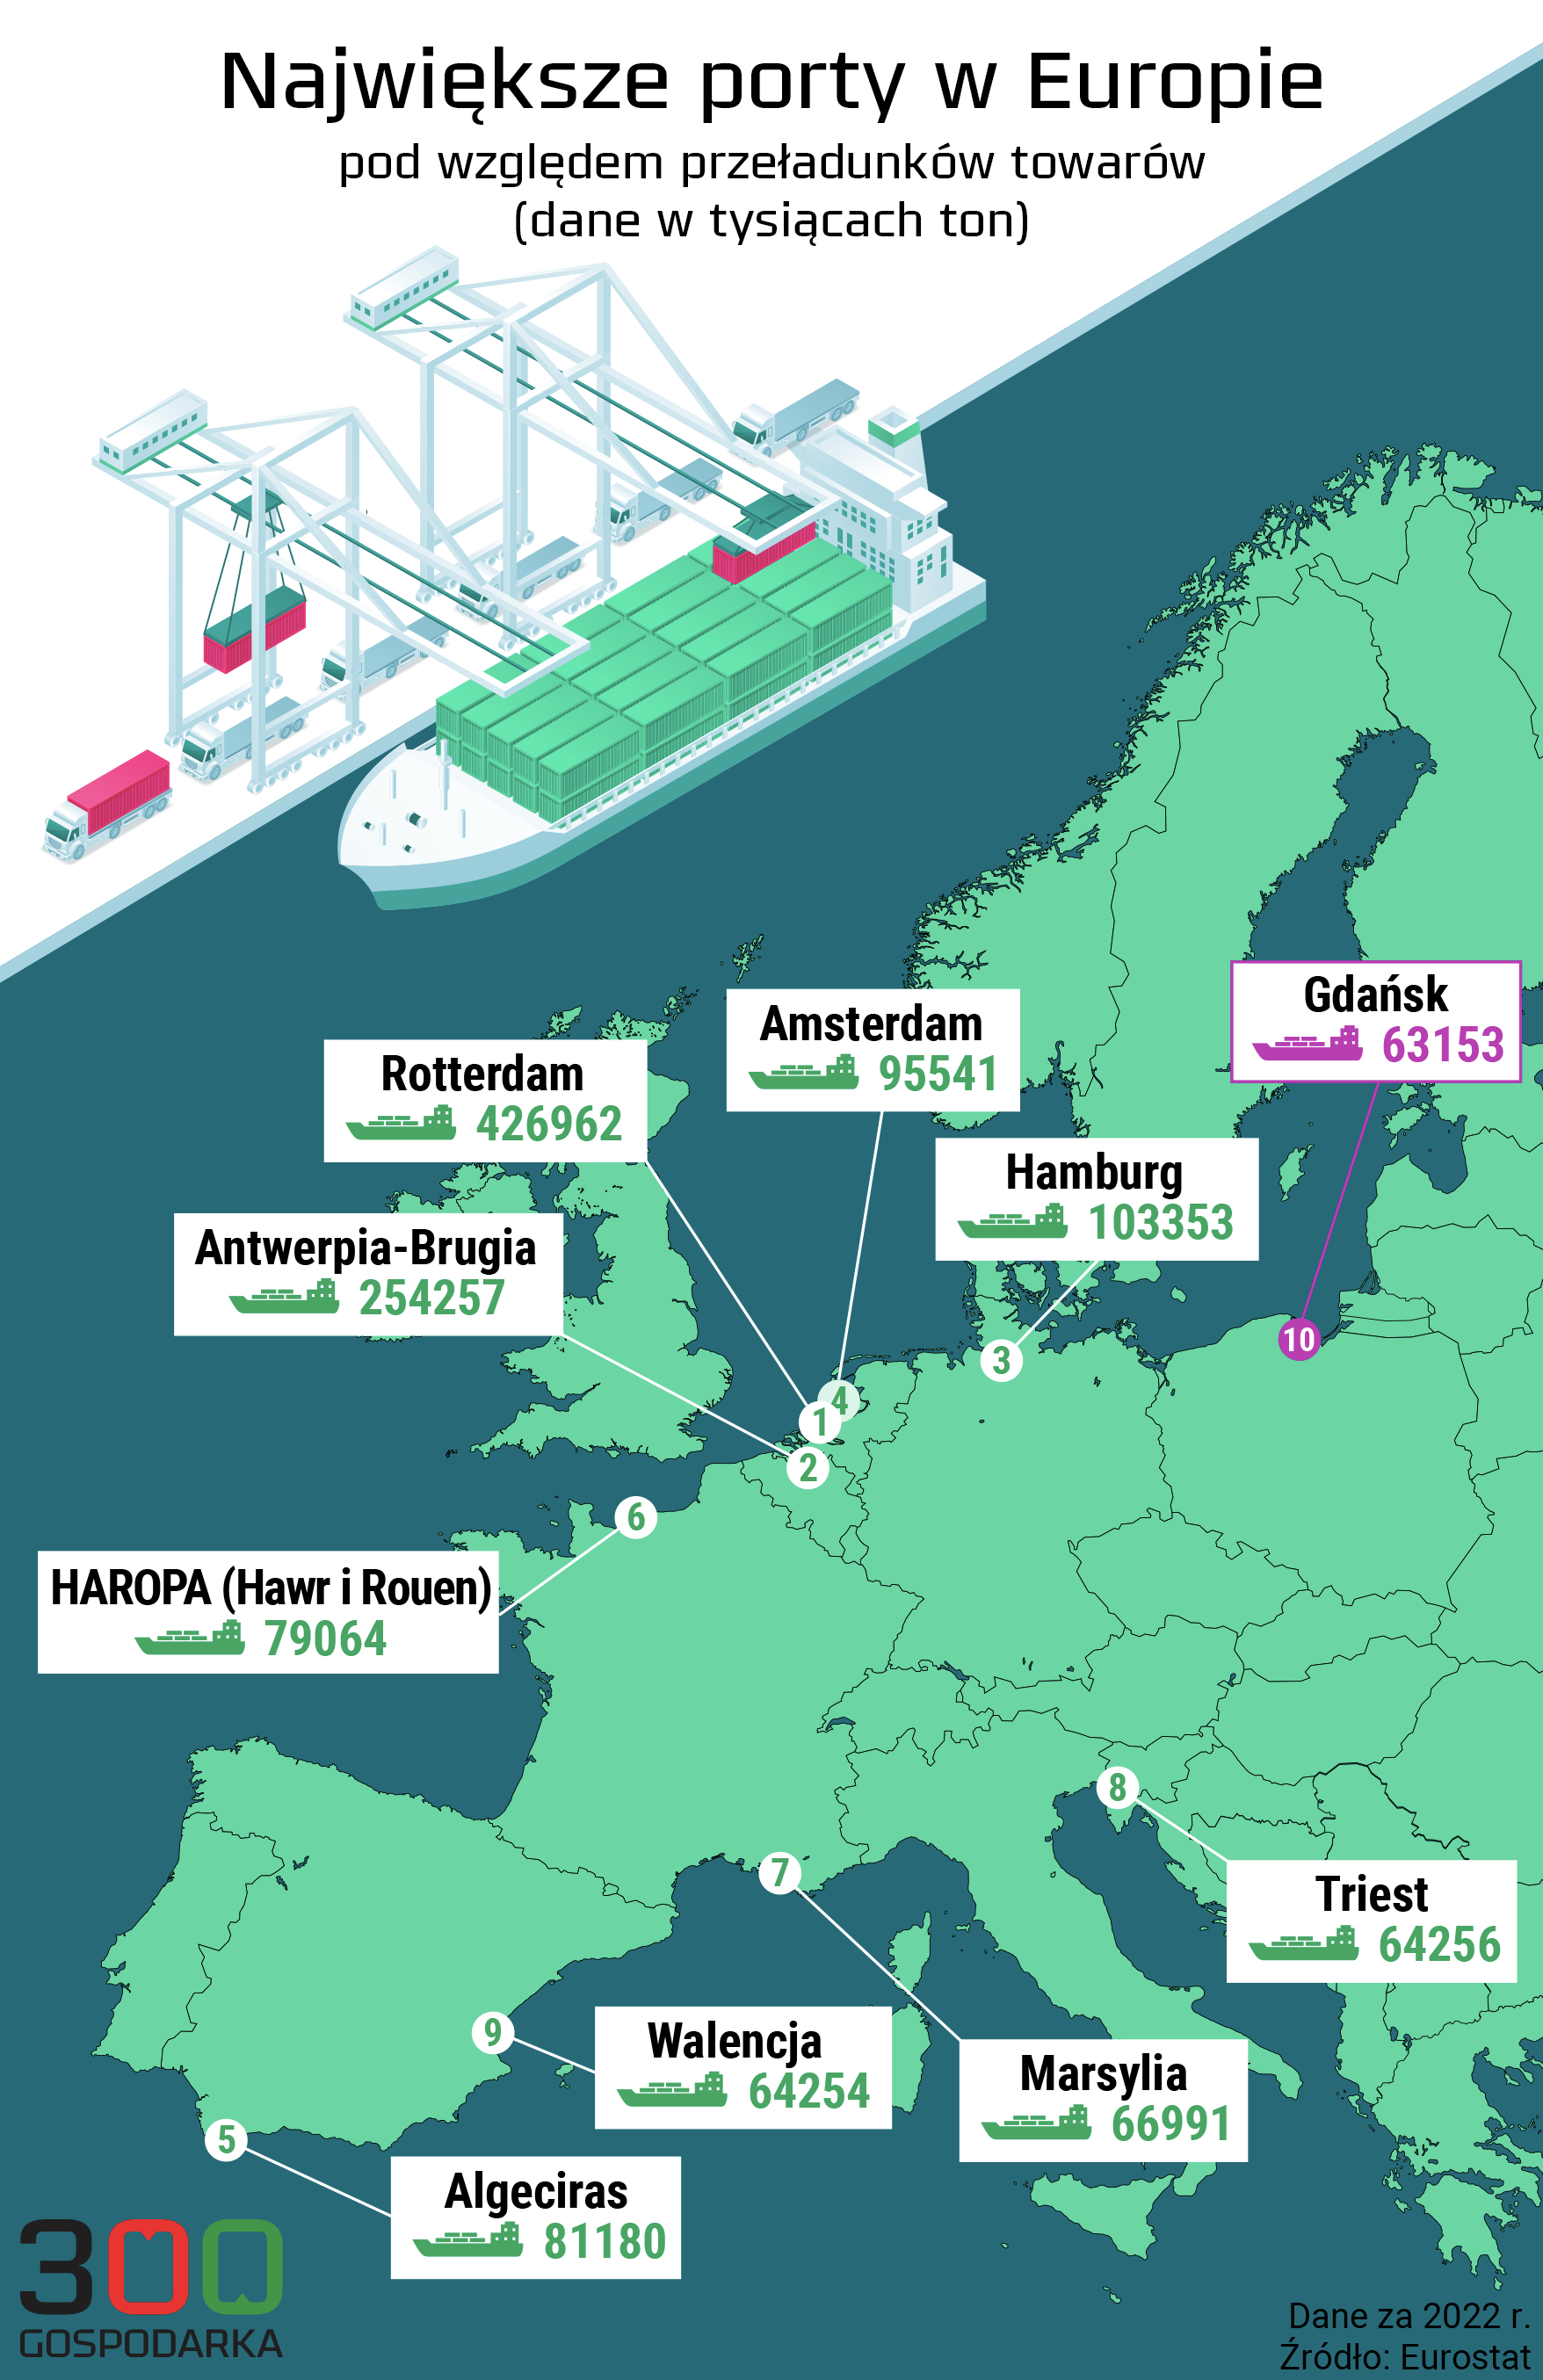 Największe porty w Unii Europejskiej